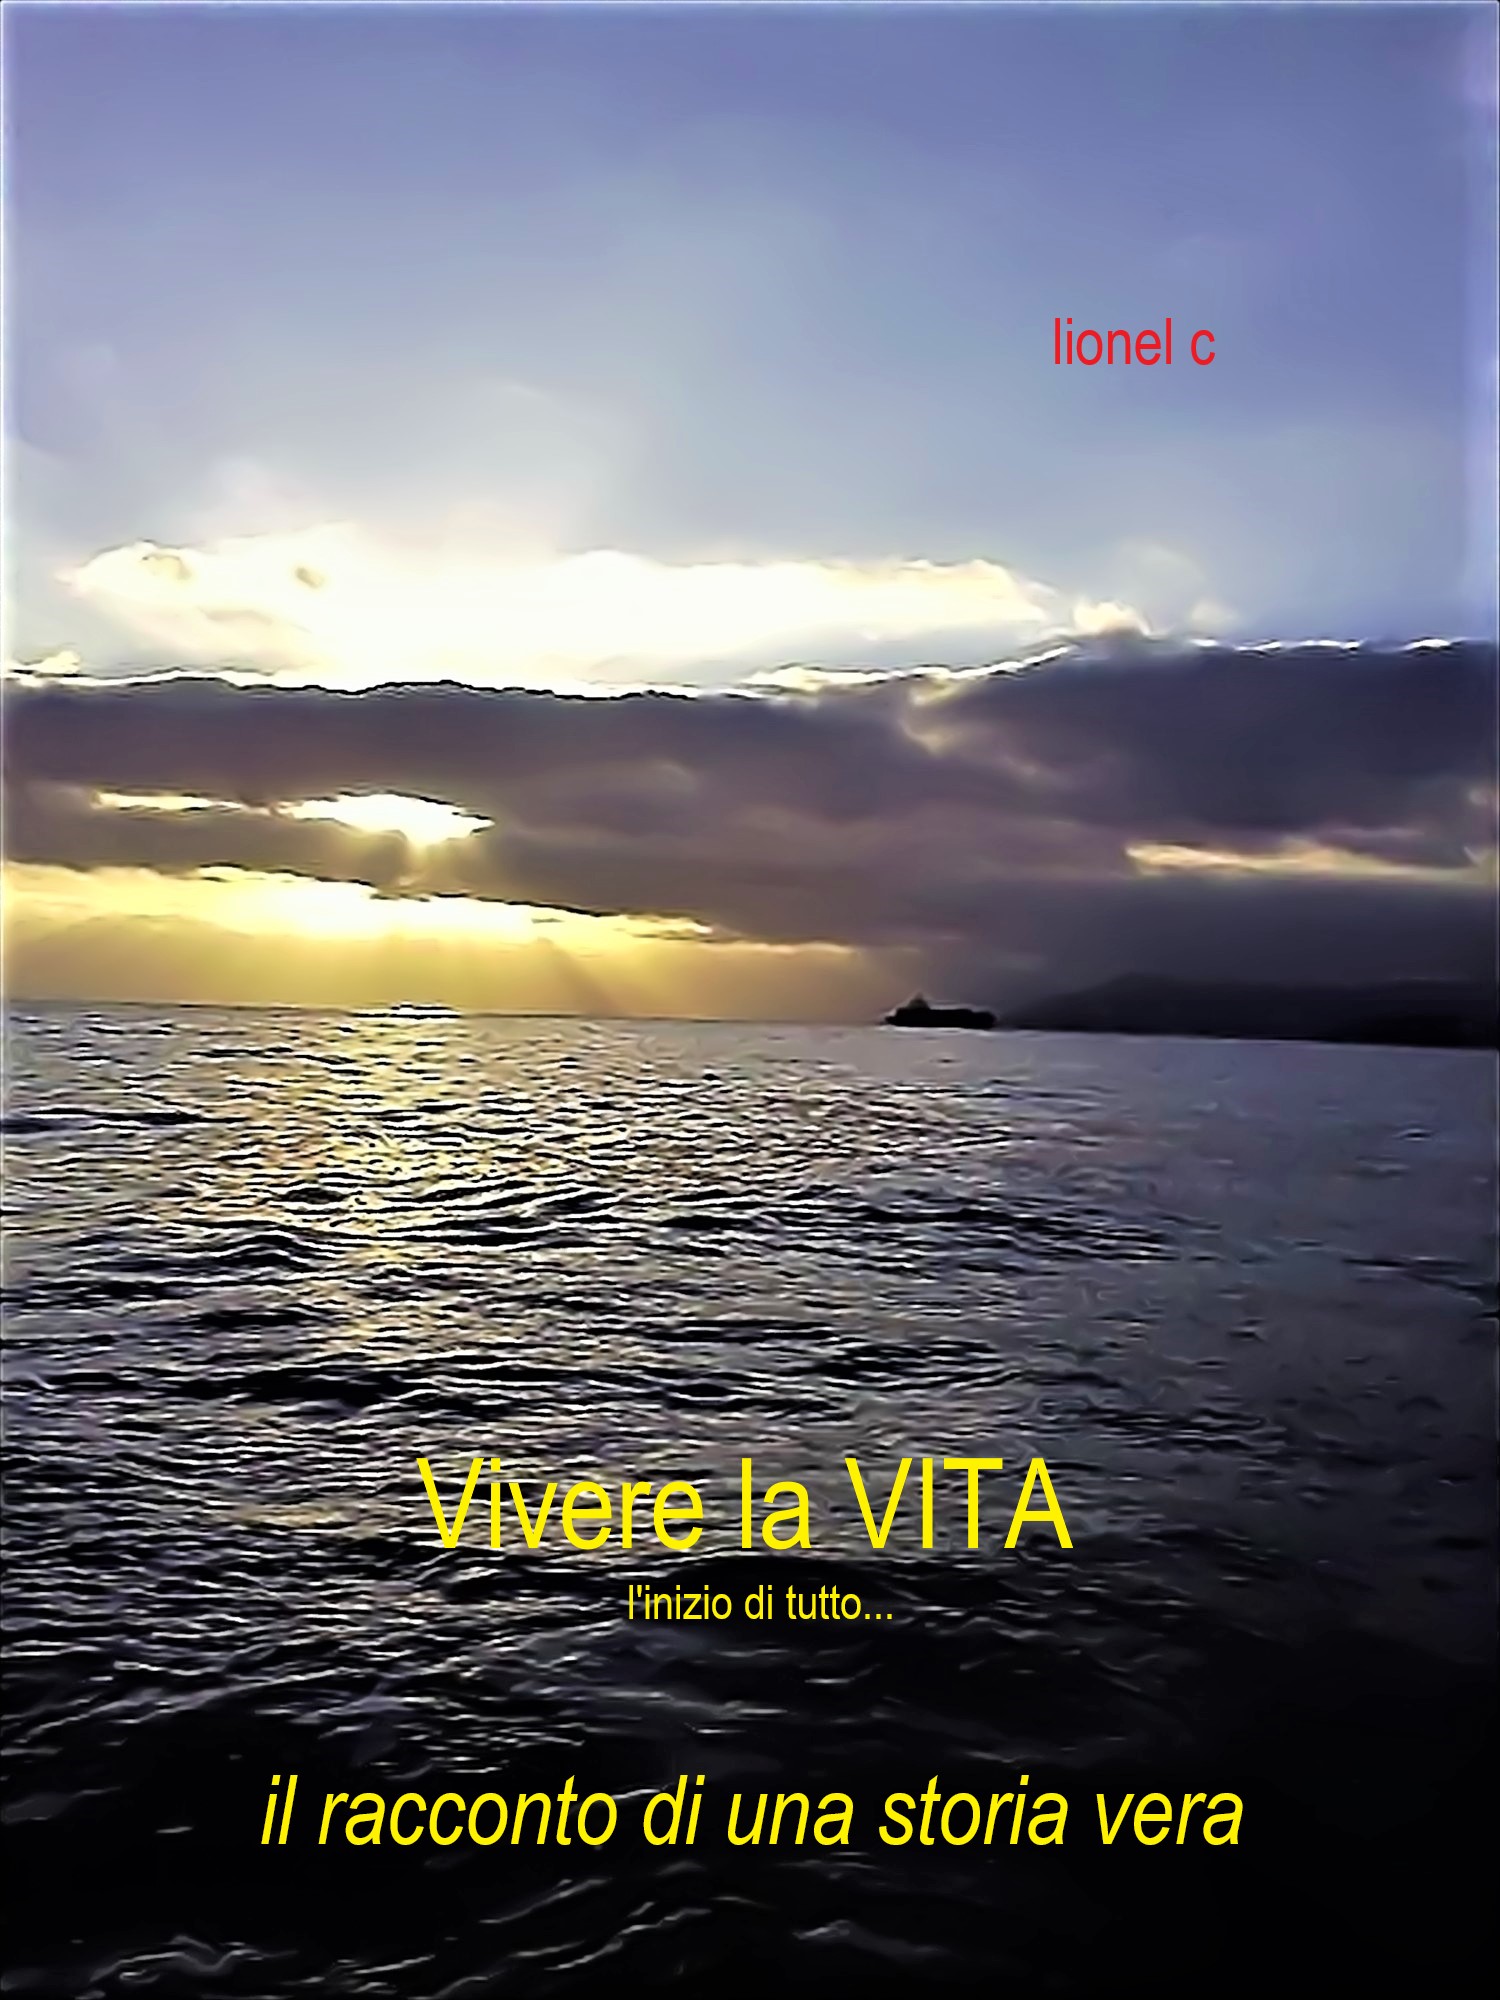 Книга Vivere La Vita из серии , созданная Lionel C, может относится к жанру Современные любовные романы, Современная зарубежная литература, Личностный рост. Стоимость электронной книги Vivere La Vita с идентификатором 40851261 составляет 818.34 руб.